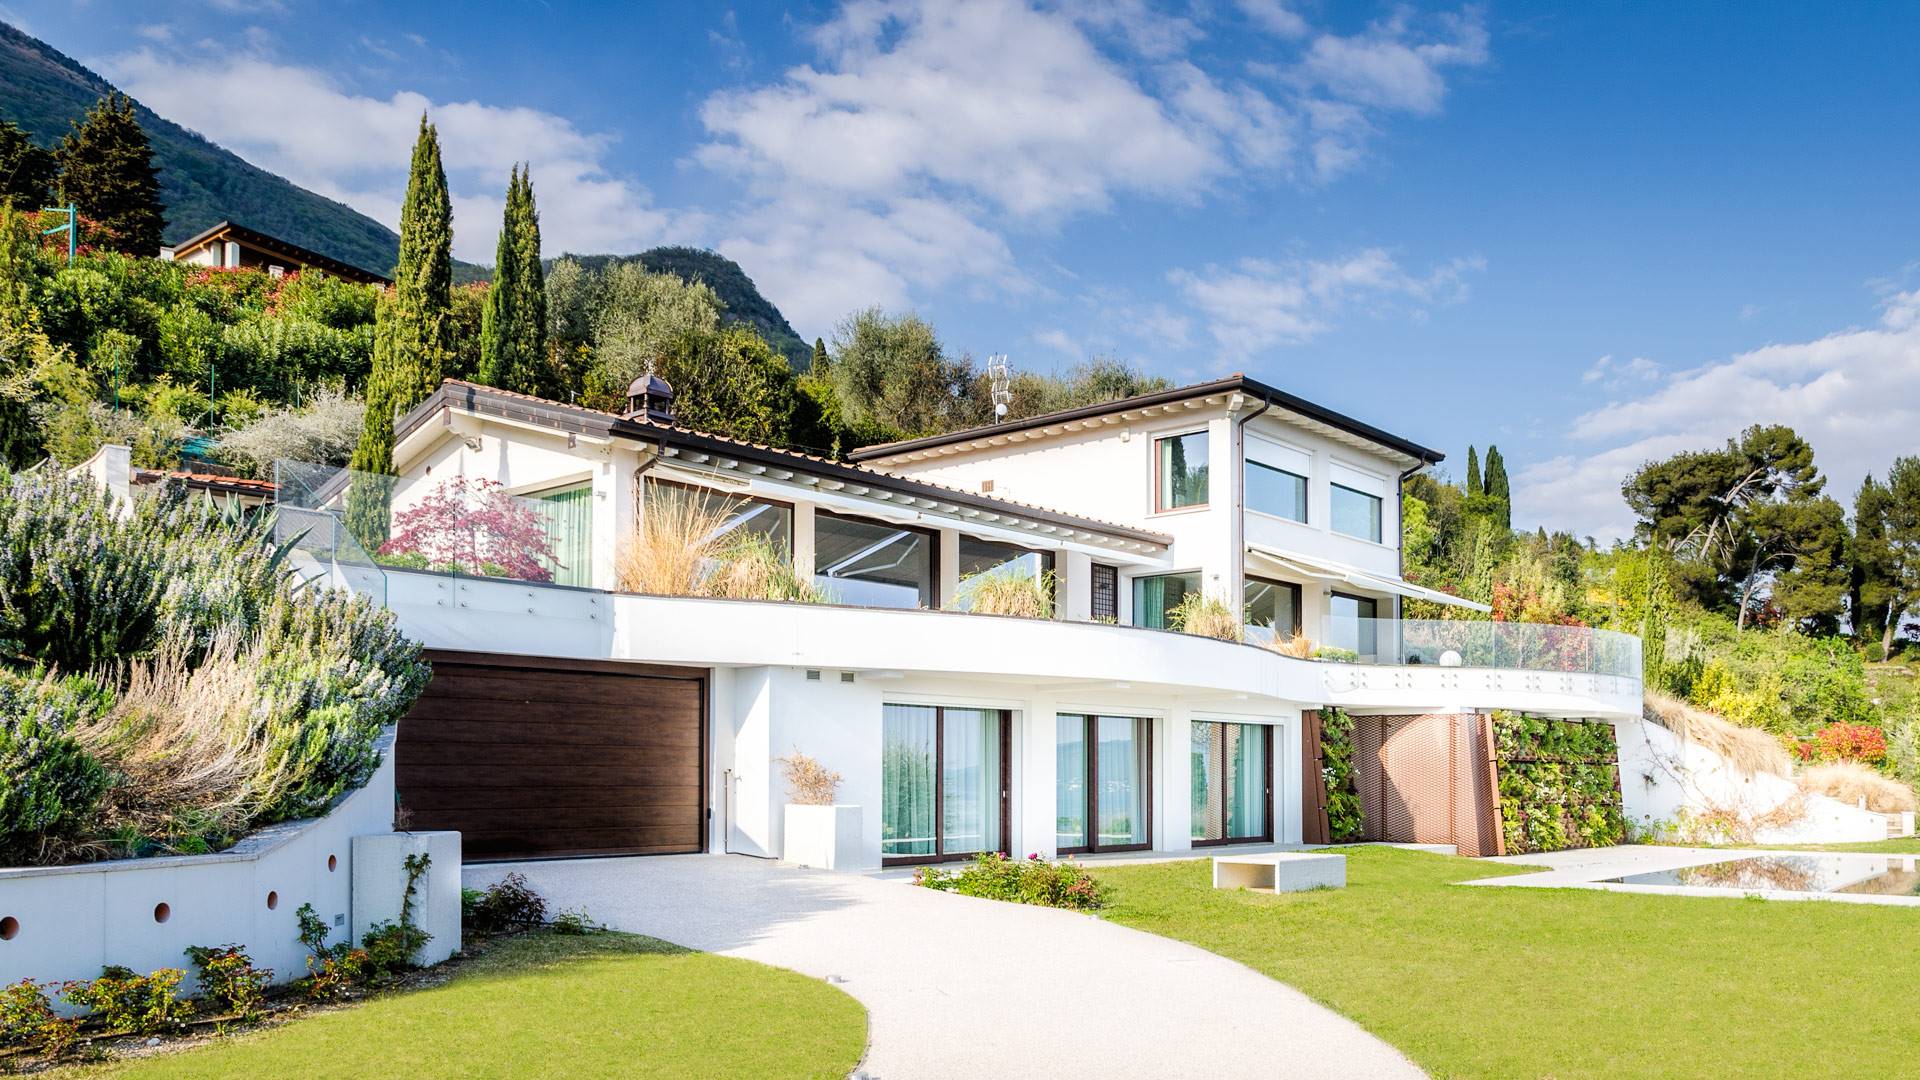 GARDONE RIVIERA, Villa zu verkaufen von 680 Qm, Heizung Bodenheizung, Energie-klasse: A+, zusammengestellt von: 10 Raume, Separate Küche, , 6 Zimmer, 